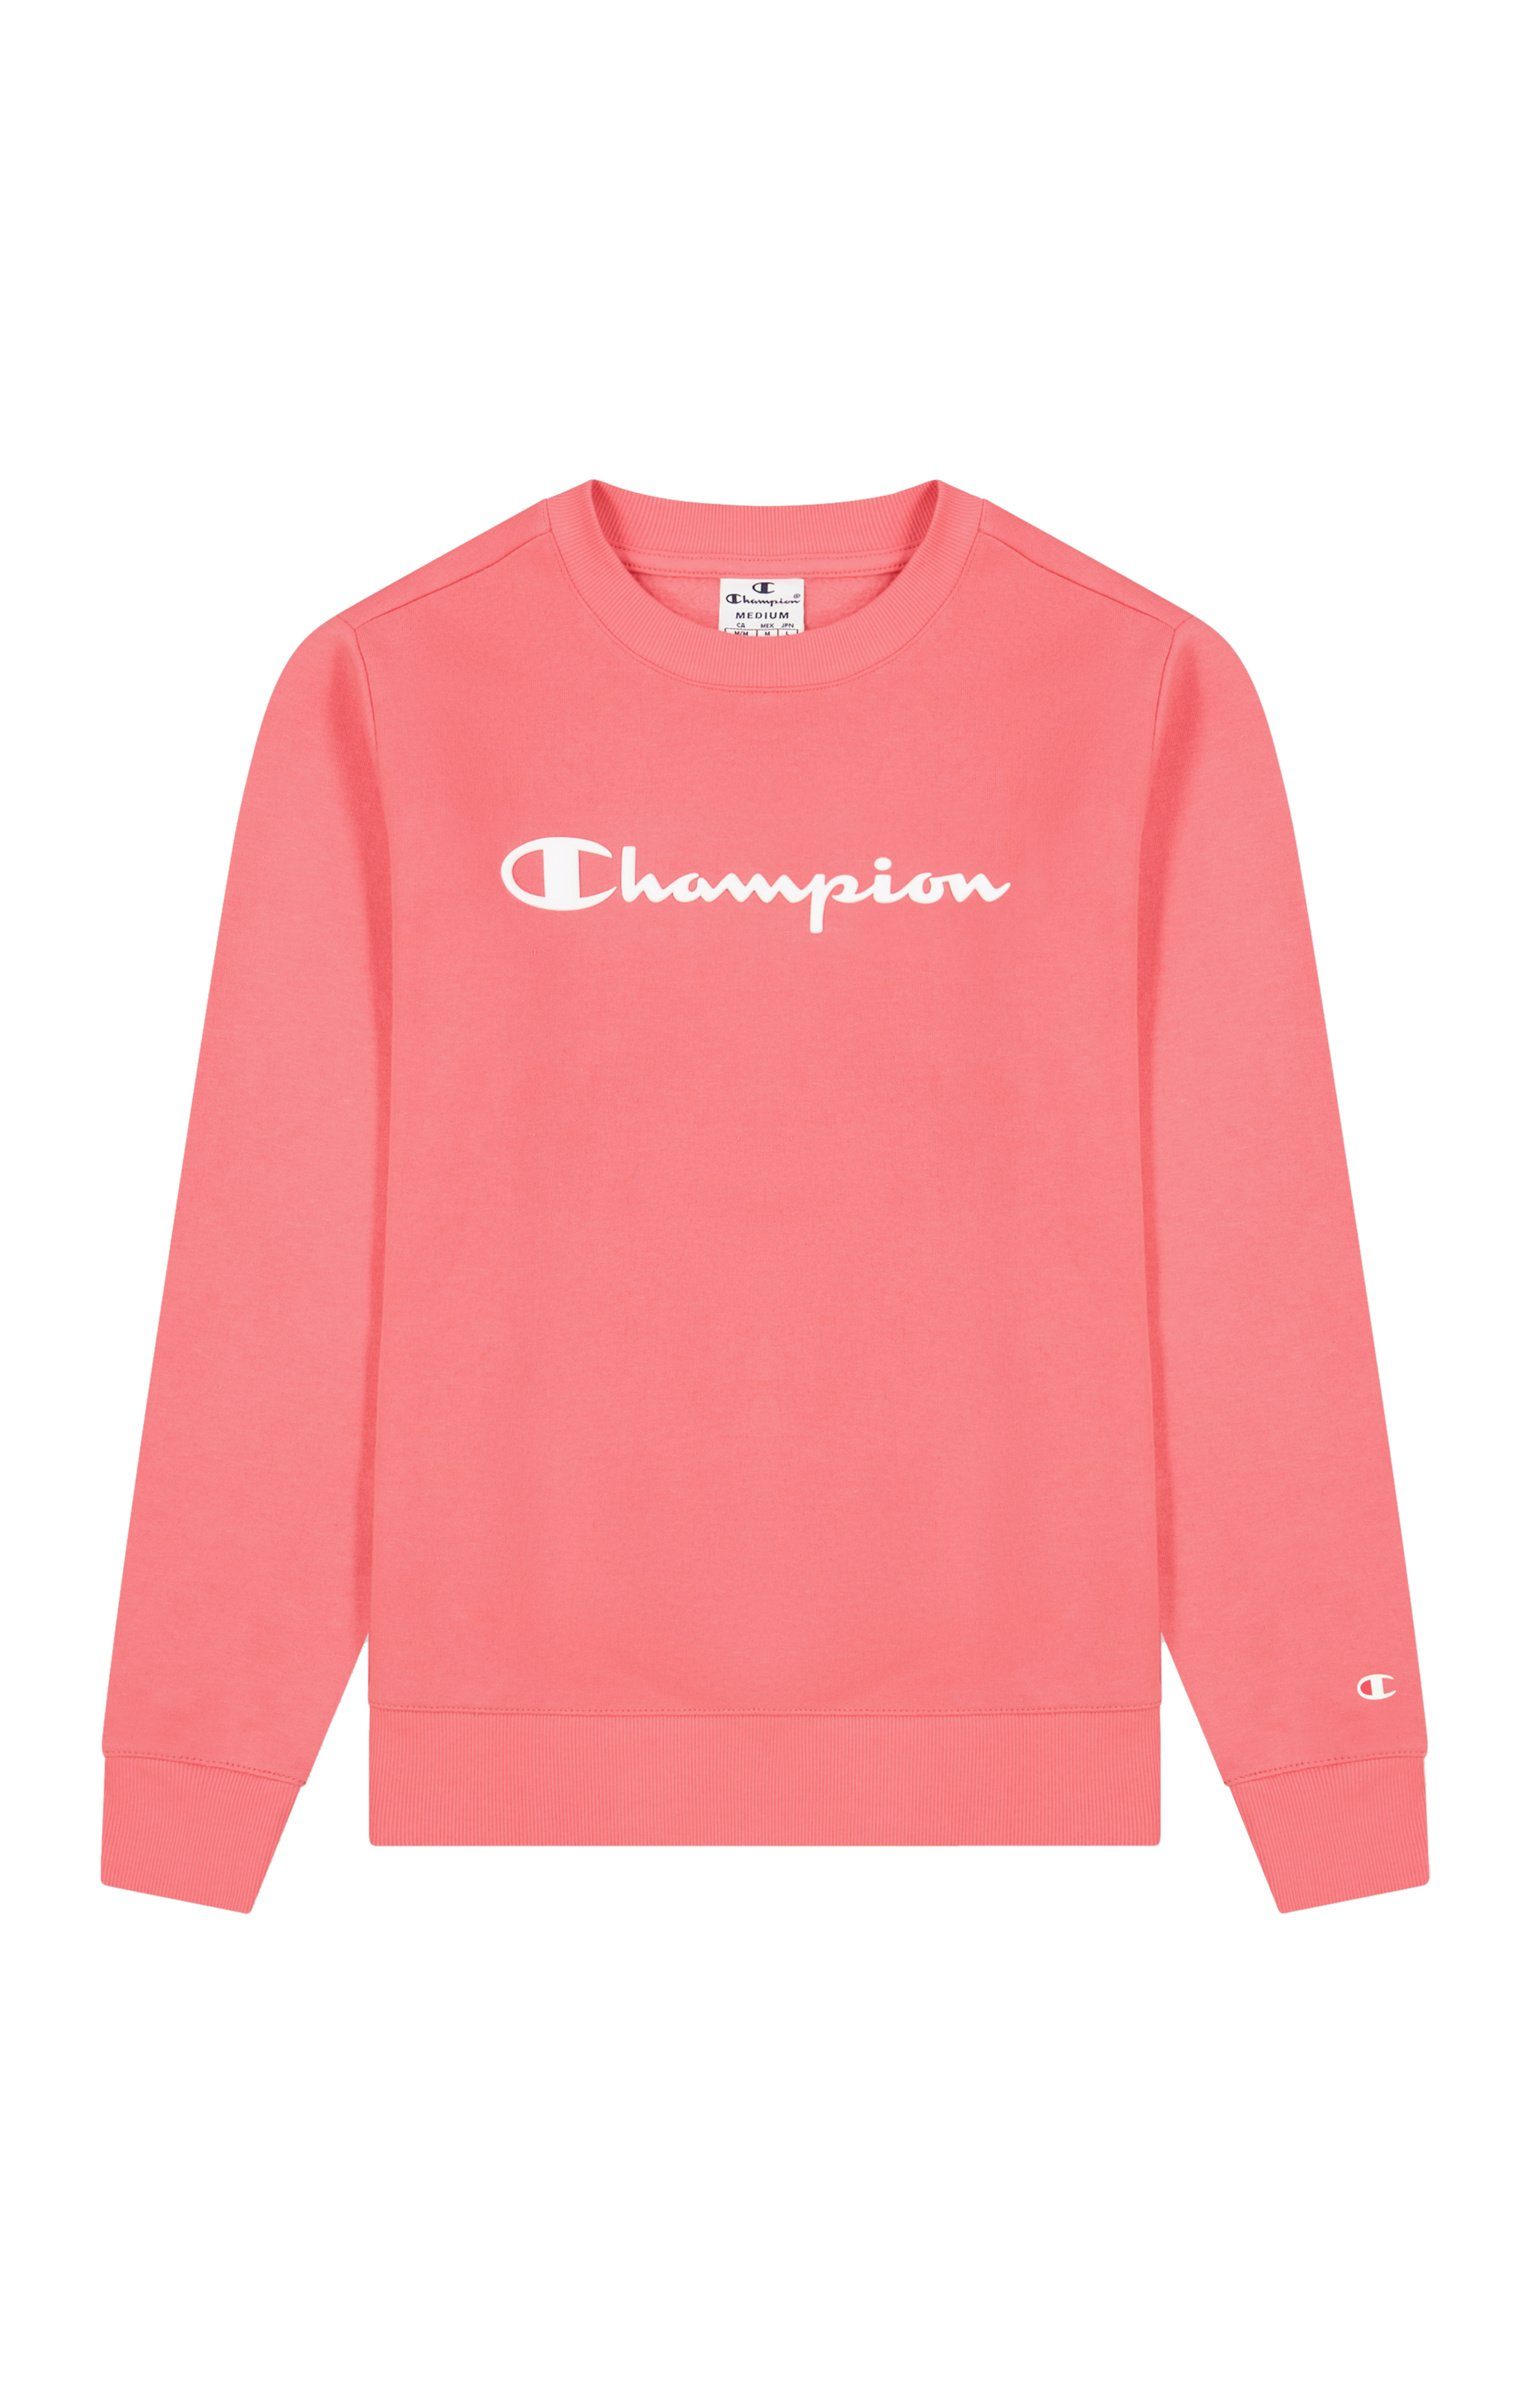 Champion Sweatshirt Crewneck Sweatshirt online kaufen | OTTO